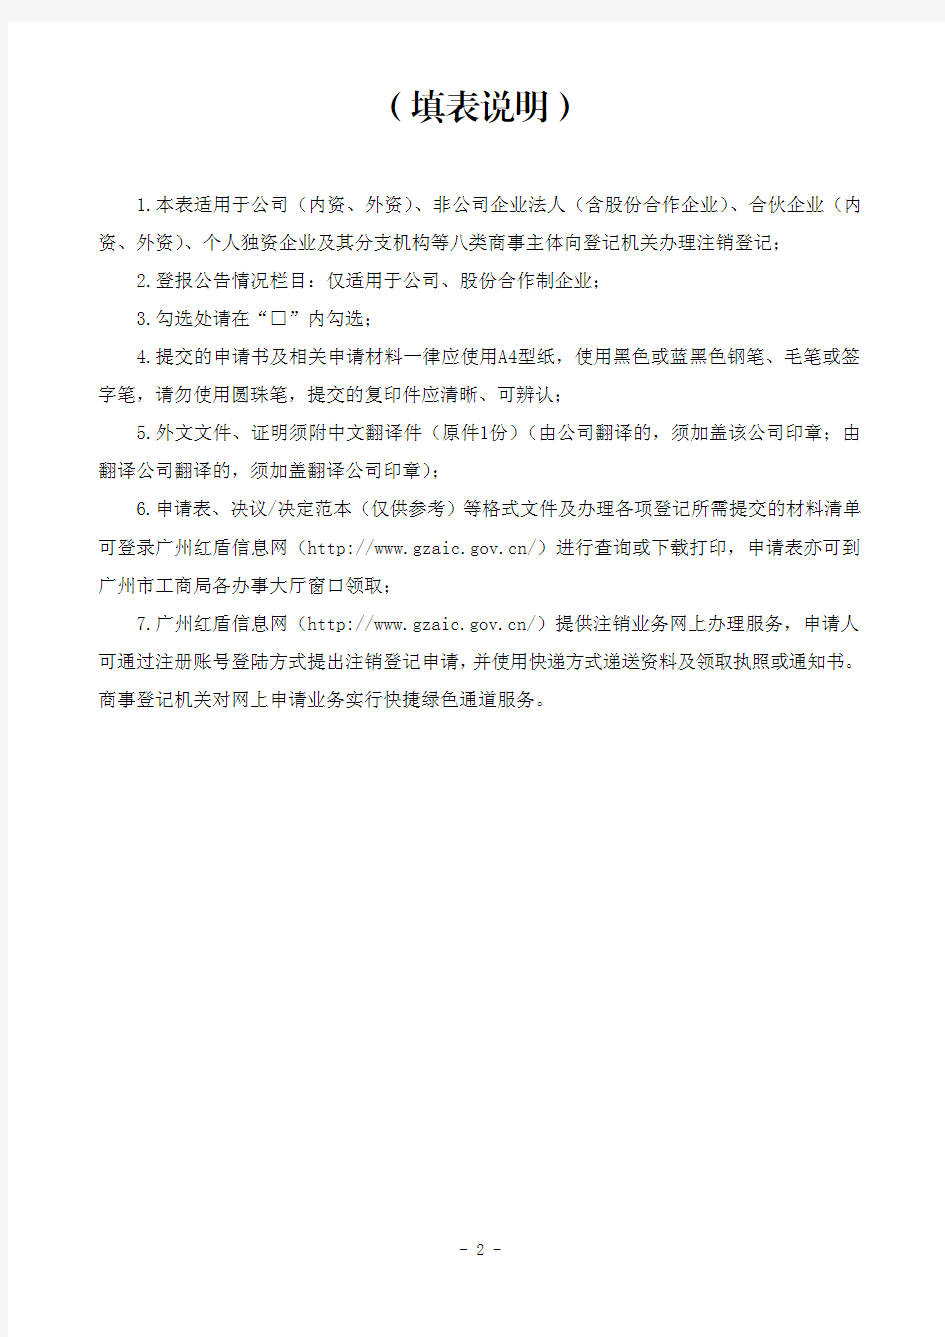 企业注销登记申请书 - 广州红盾信息网